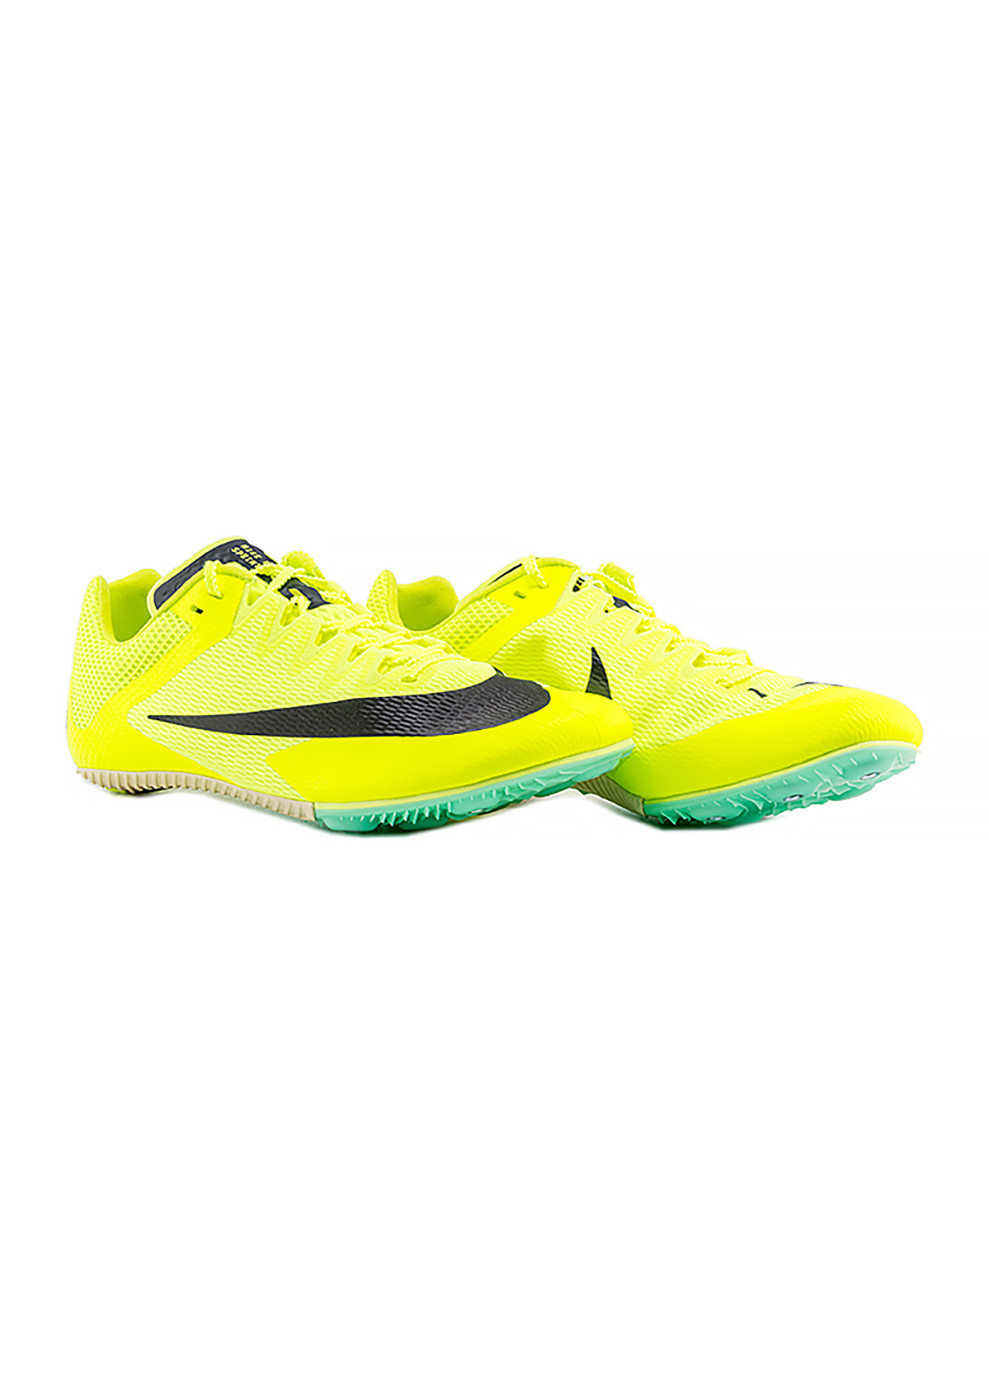 Салатовые демисезонные мужские кроссовки zoom rival sprint салатовый Nike